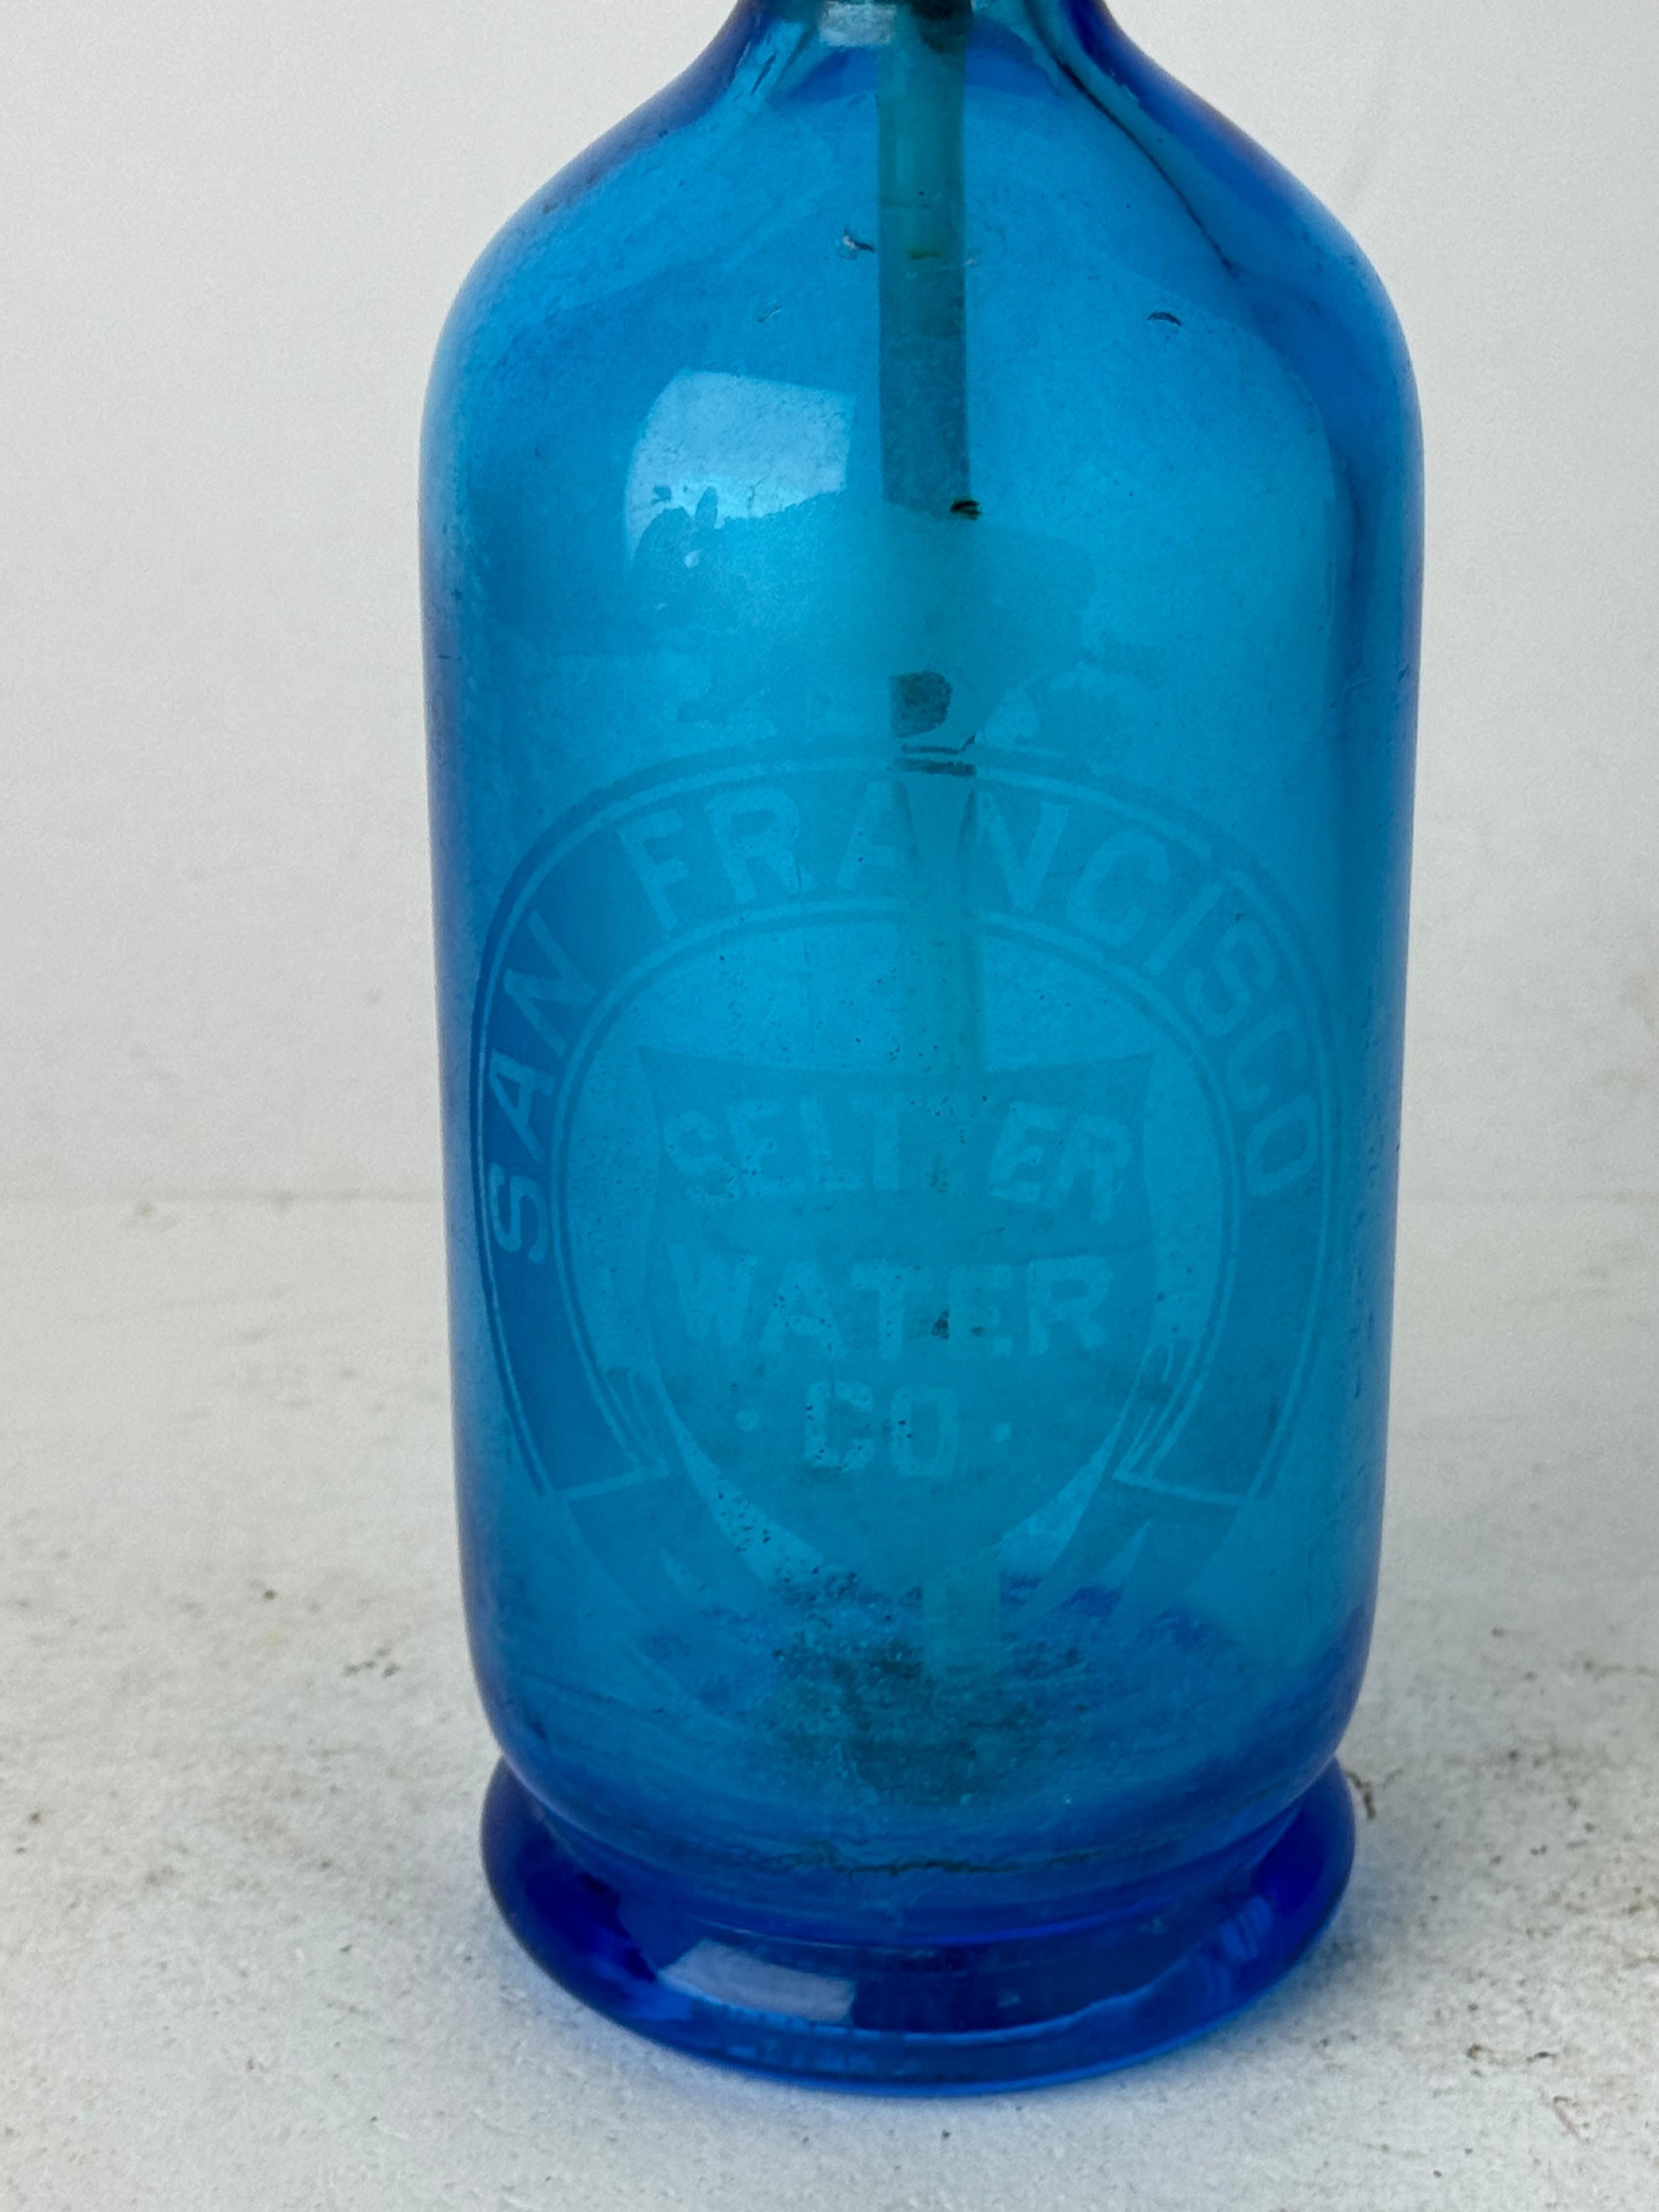 Verleihen Sie Ihrer Hausbar oder Ihrer Auslage einen Hauch von altem Charme mit unserer bezaubernden antiken/vintage blauen Glas-Seltzer-Flasche, die in Österreich für die renommierte San Francisco Seltzer Water Company hergestellt wurde. Dieses